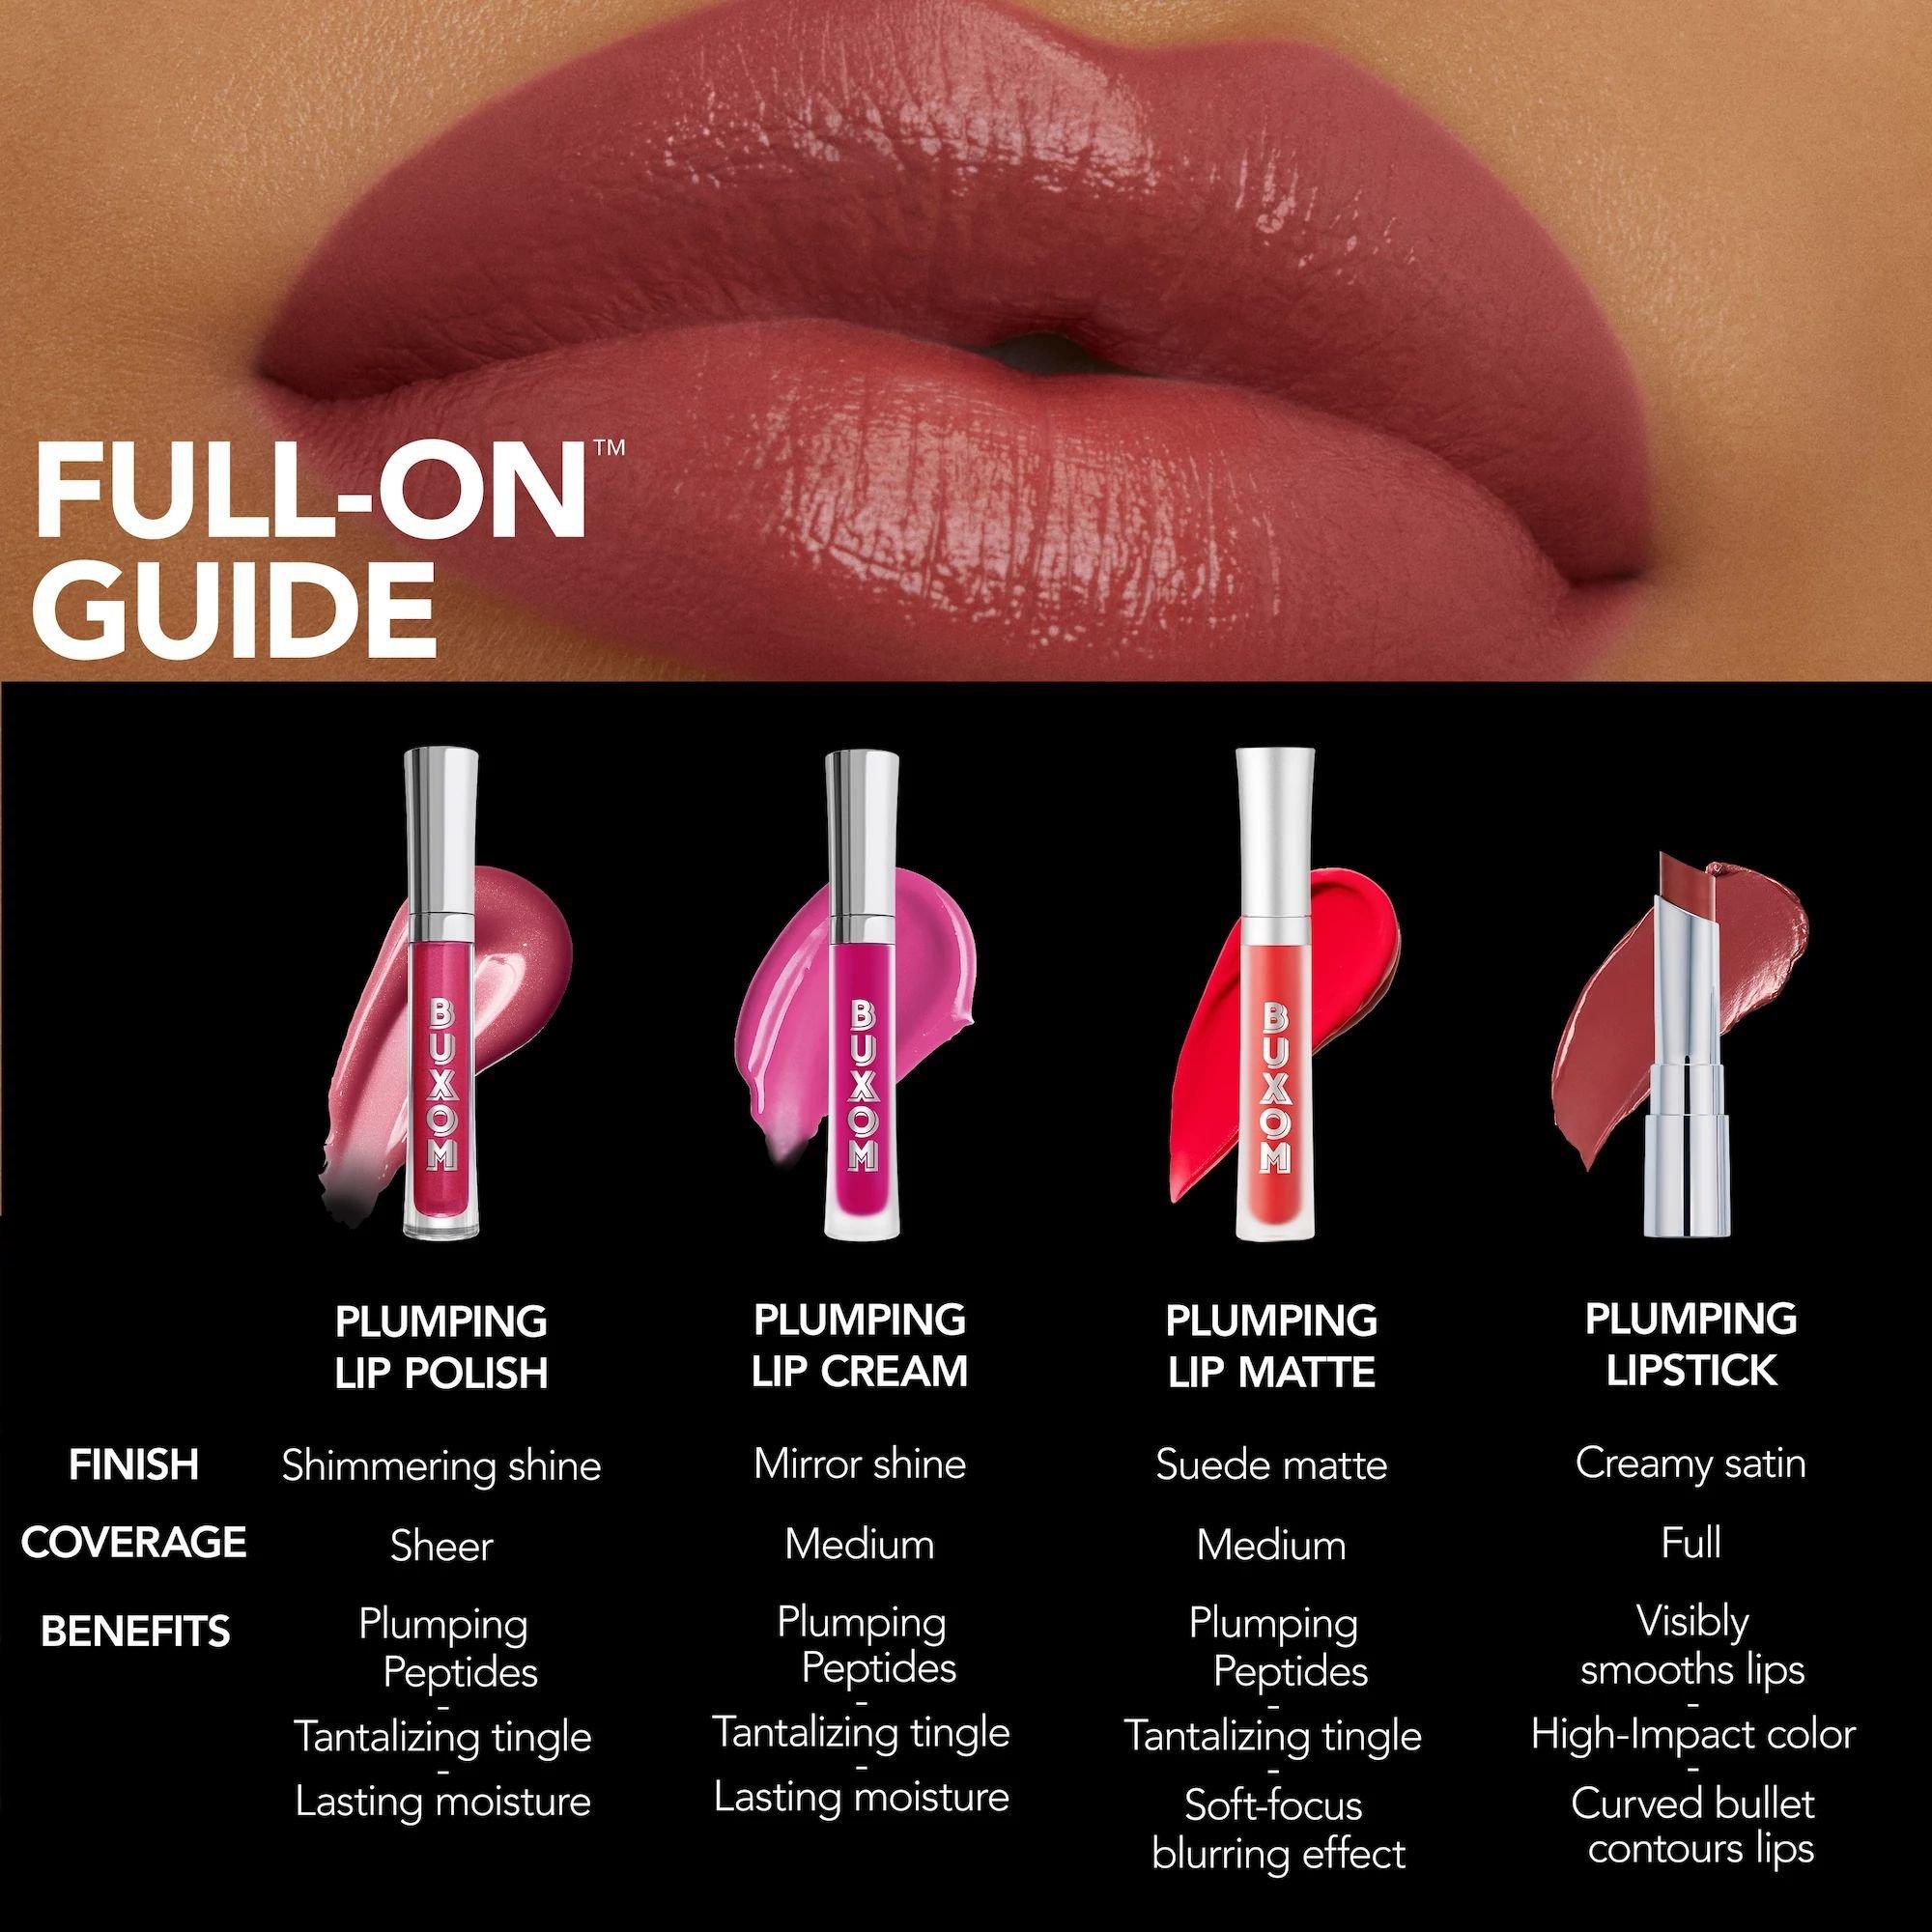 Buxom Full-On Plumping Lipstick Satin / Rosé Bubbles